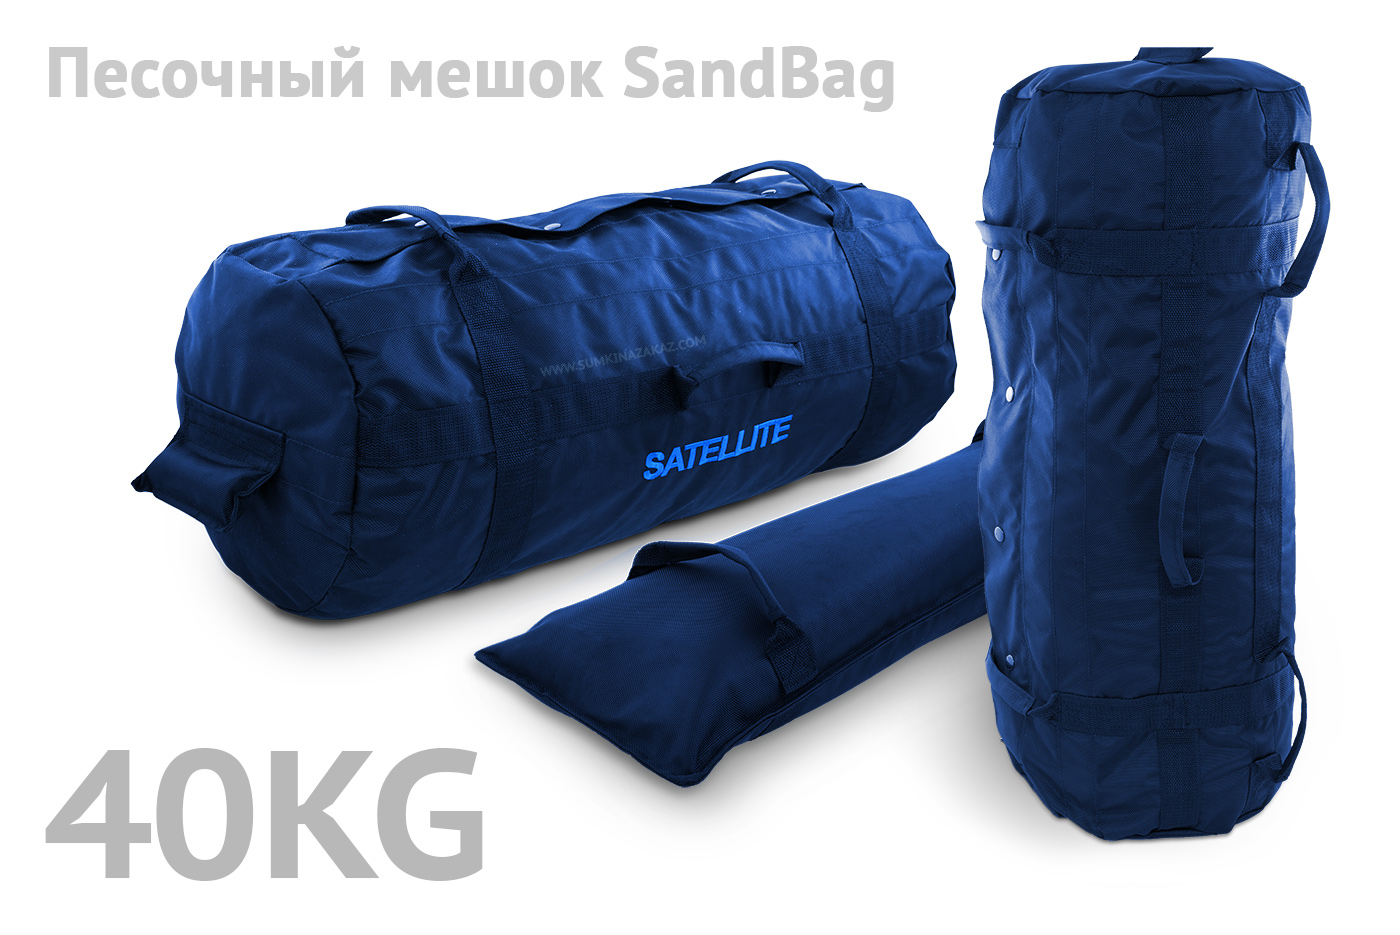 Сэндбэг 40кг, синий, blue, спортивная сумка, сумка для спорта, сумка для фитнеса, сумка для спорта на пляже, спортивный инвентарь, пошив на заказ, купить в спб, Песочный мешок SandBag, купить в спб